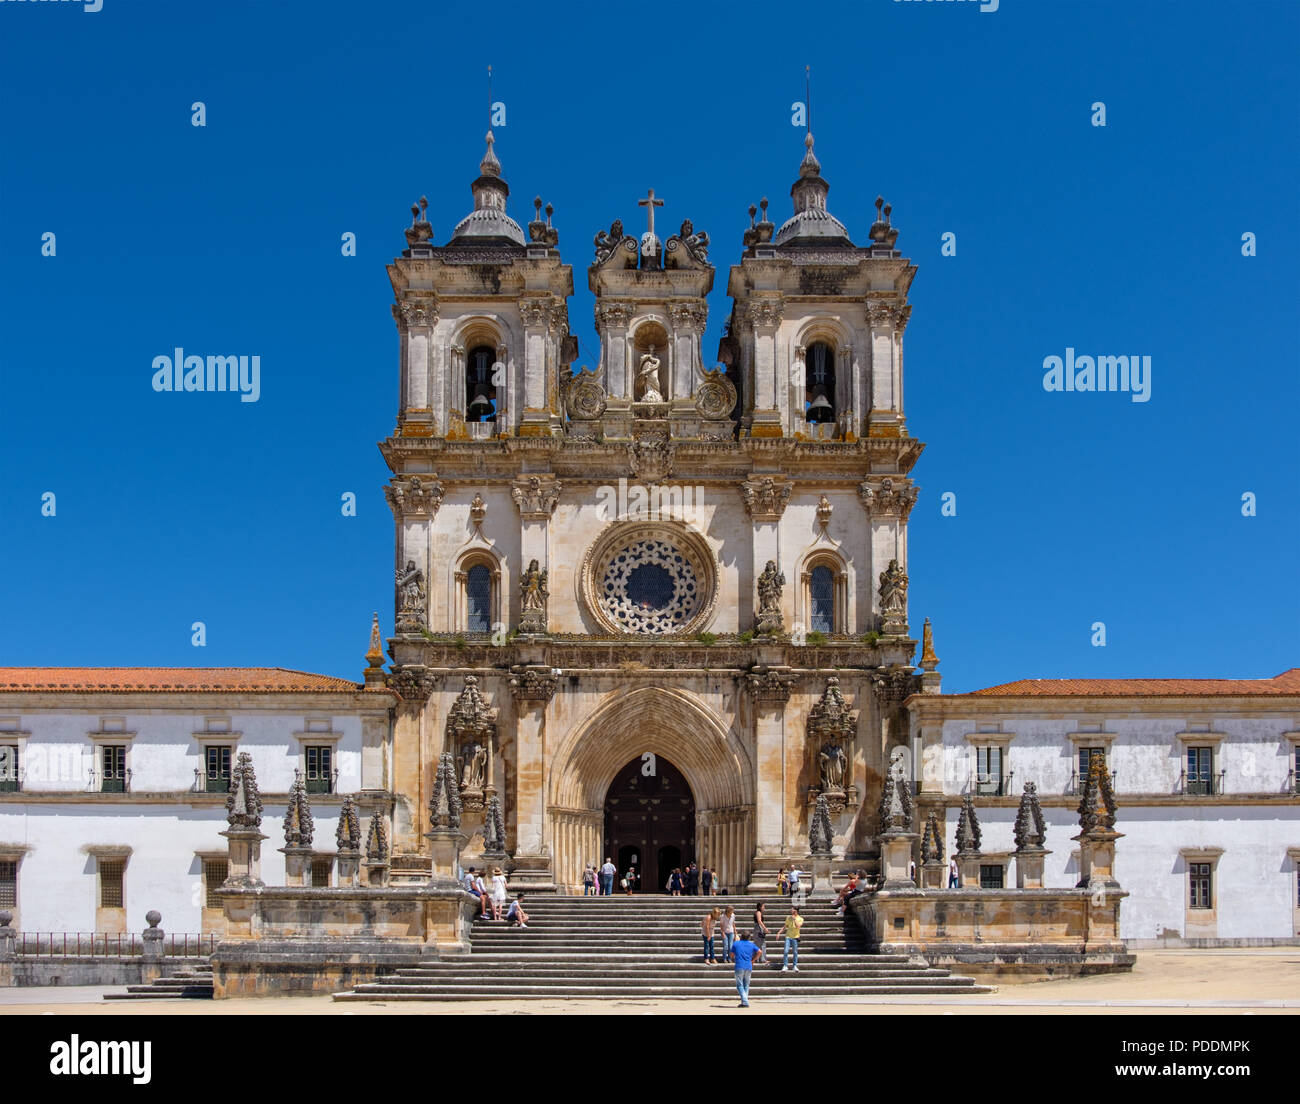 Alcobaca monastery - Mosteiro de Alcobaça - à Alcobaça, Portugal, Europe Banque D'Images